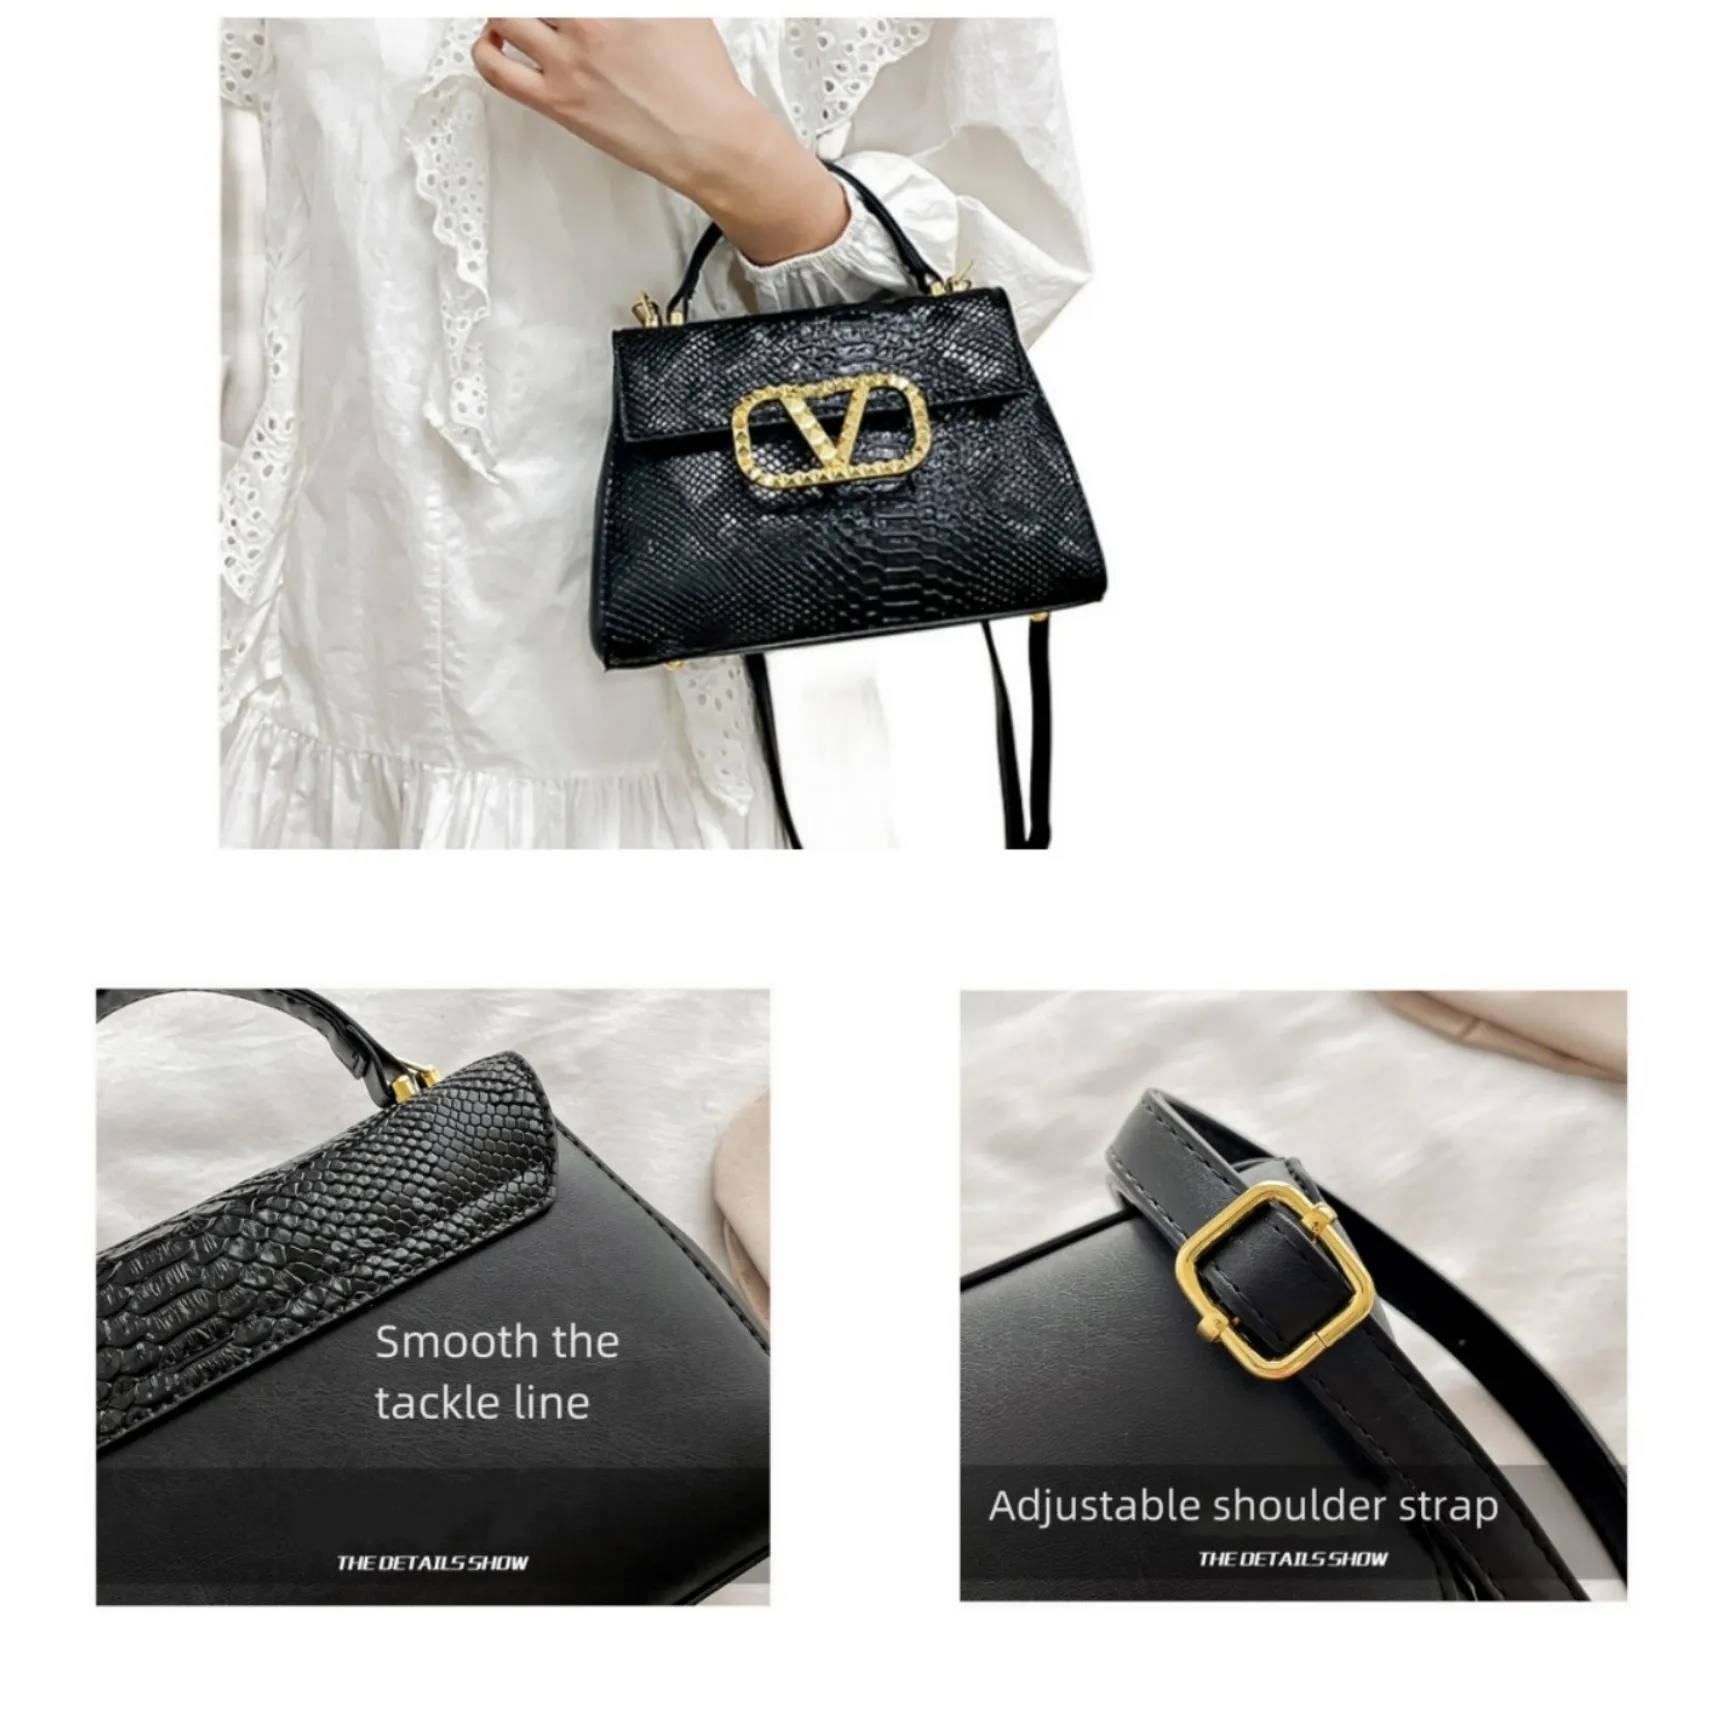 Torba na ramię designerka luksurys torby designerskie torebki torebki torebki TOTES TORDBAG KLASYK